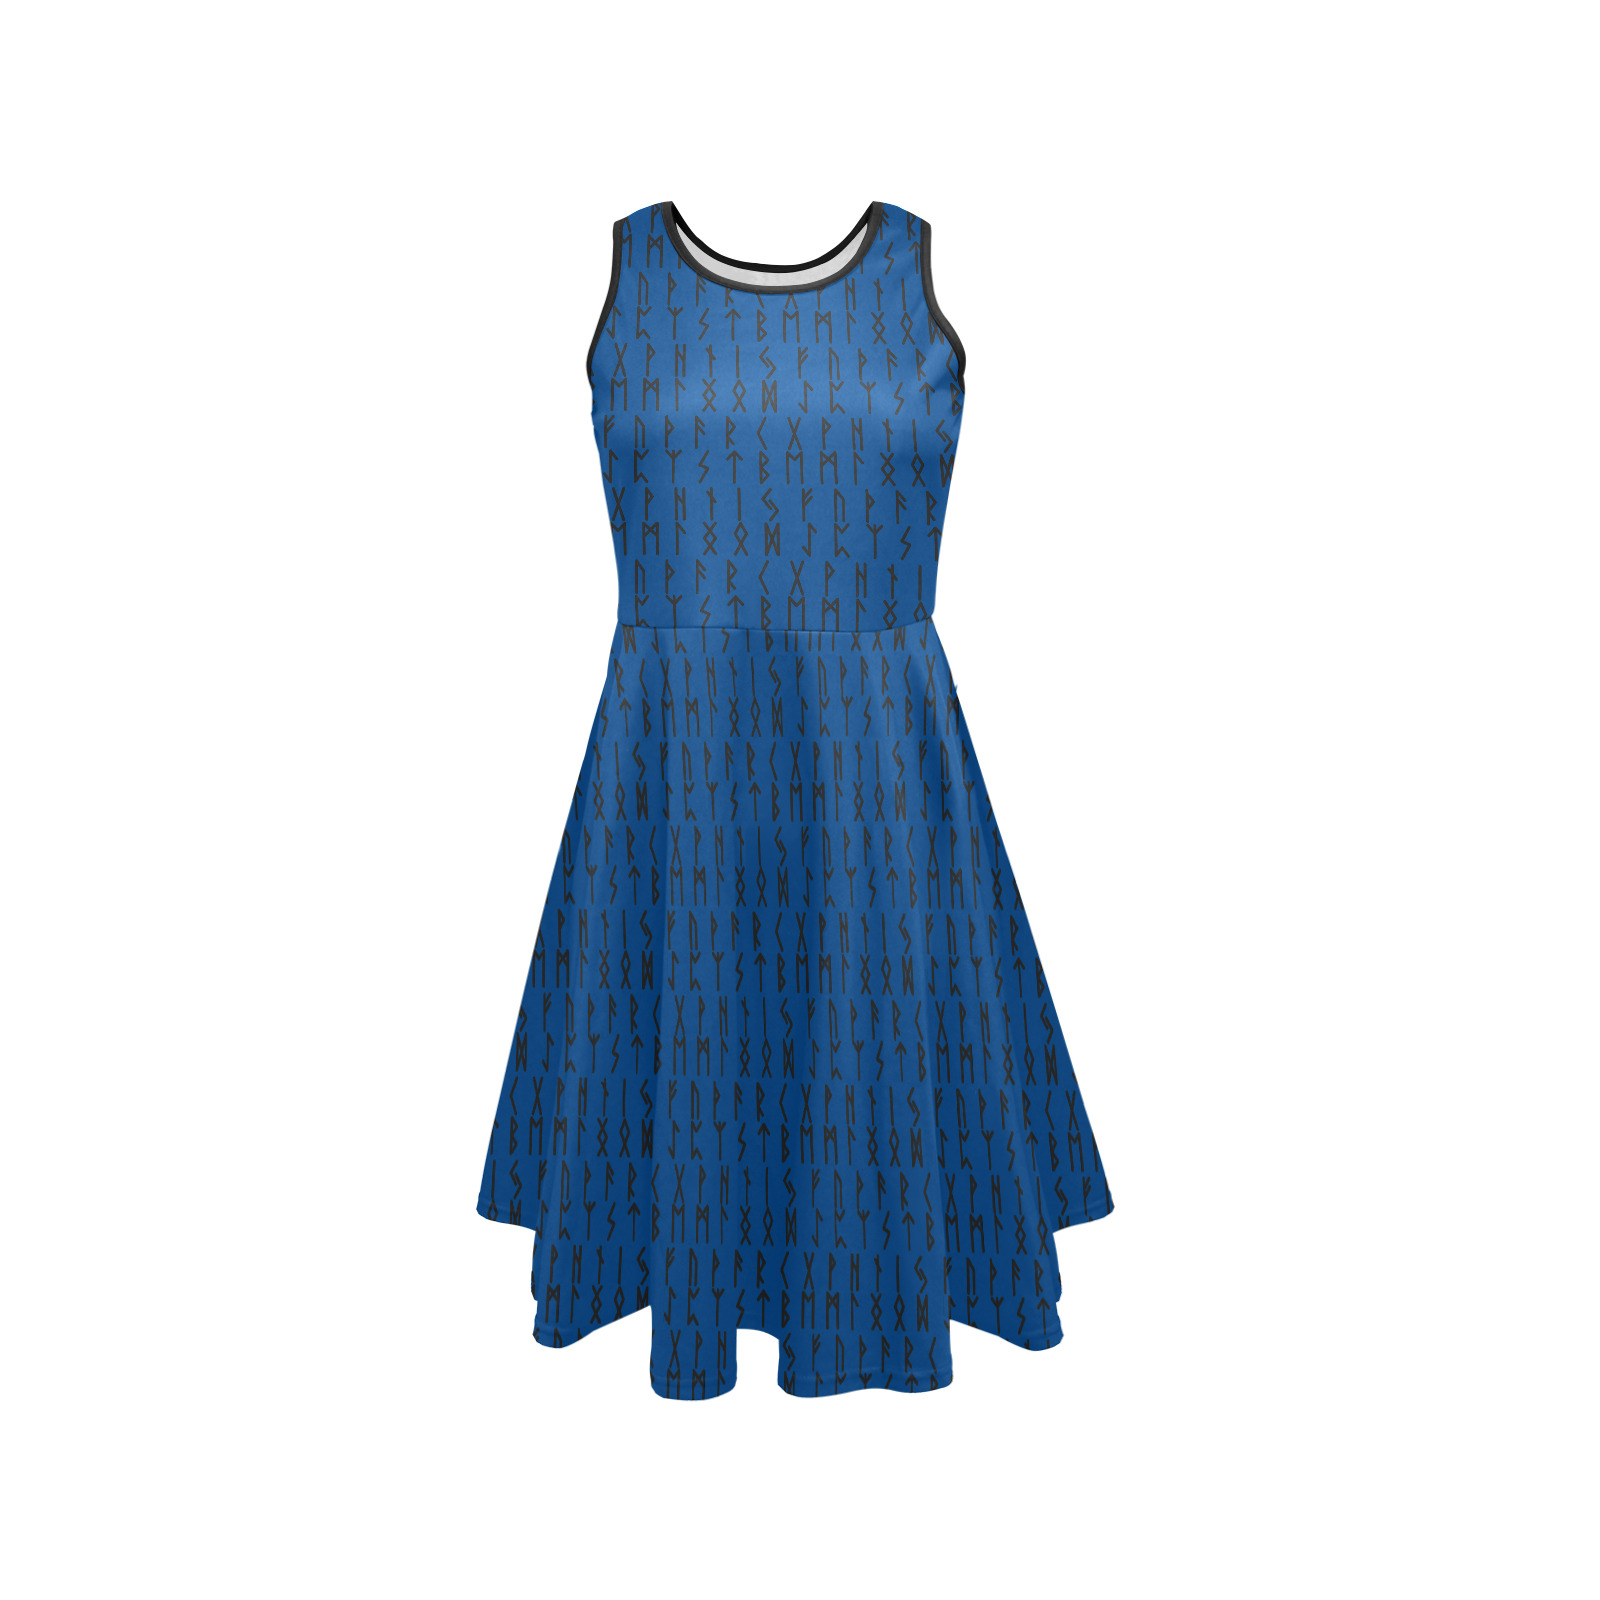 RUNE CASTING Blue Sleeveless Expansion Dress (Model D60)